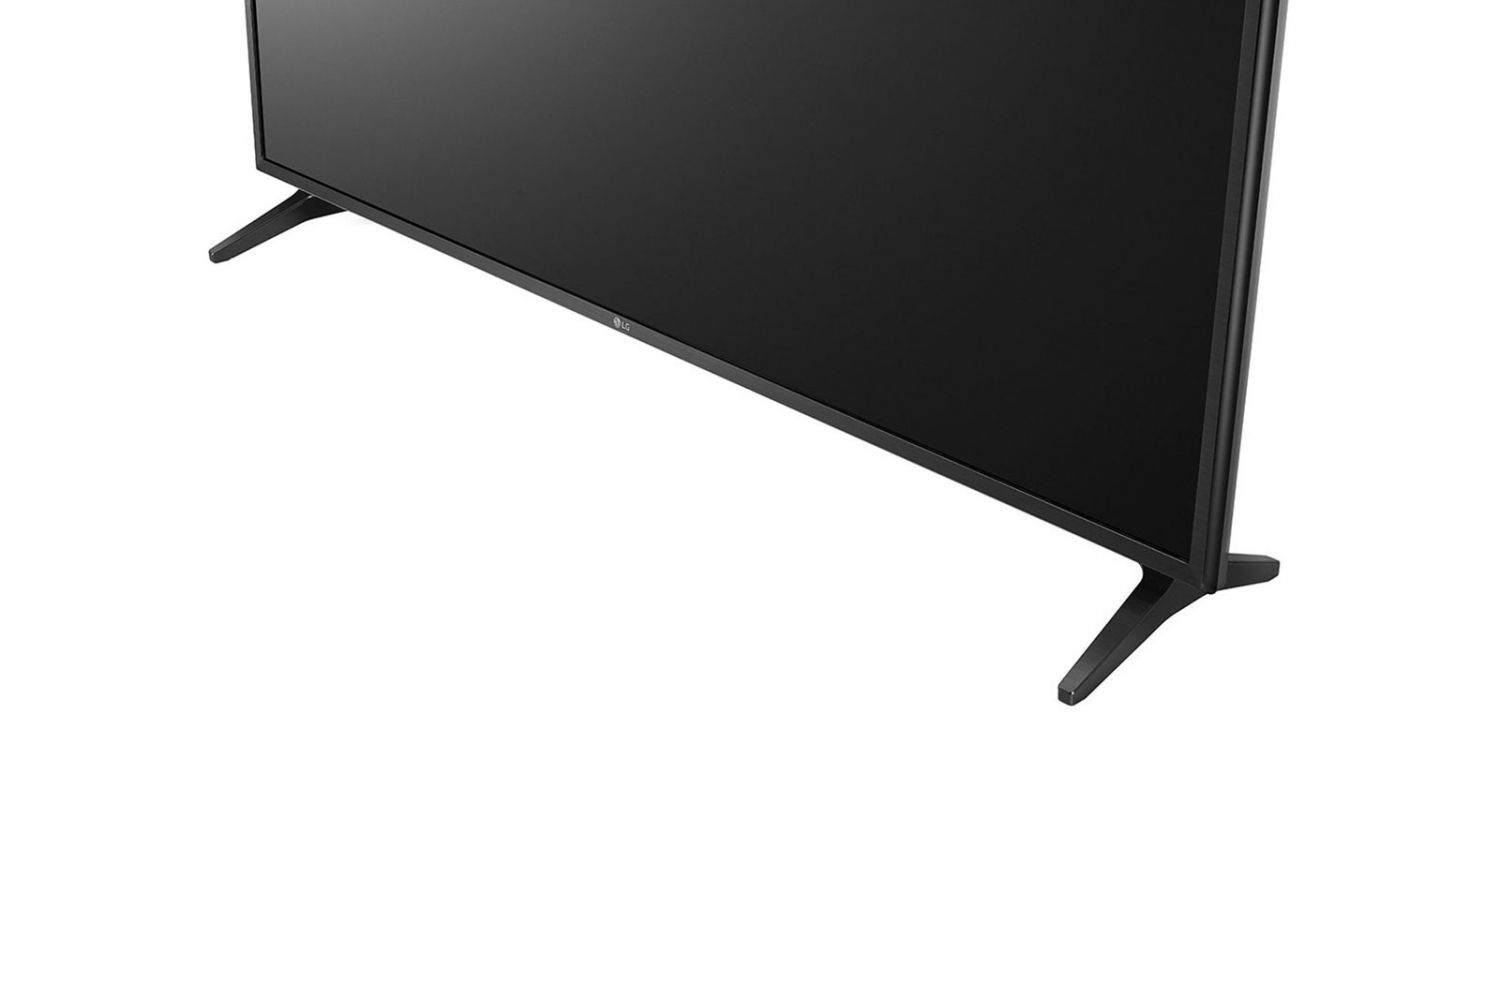 55UK6200PLA - Televisor LED LG 55UK6200PLA LED TV 139,7 cm (55